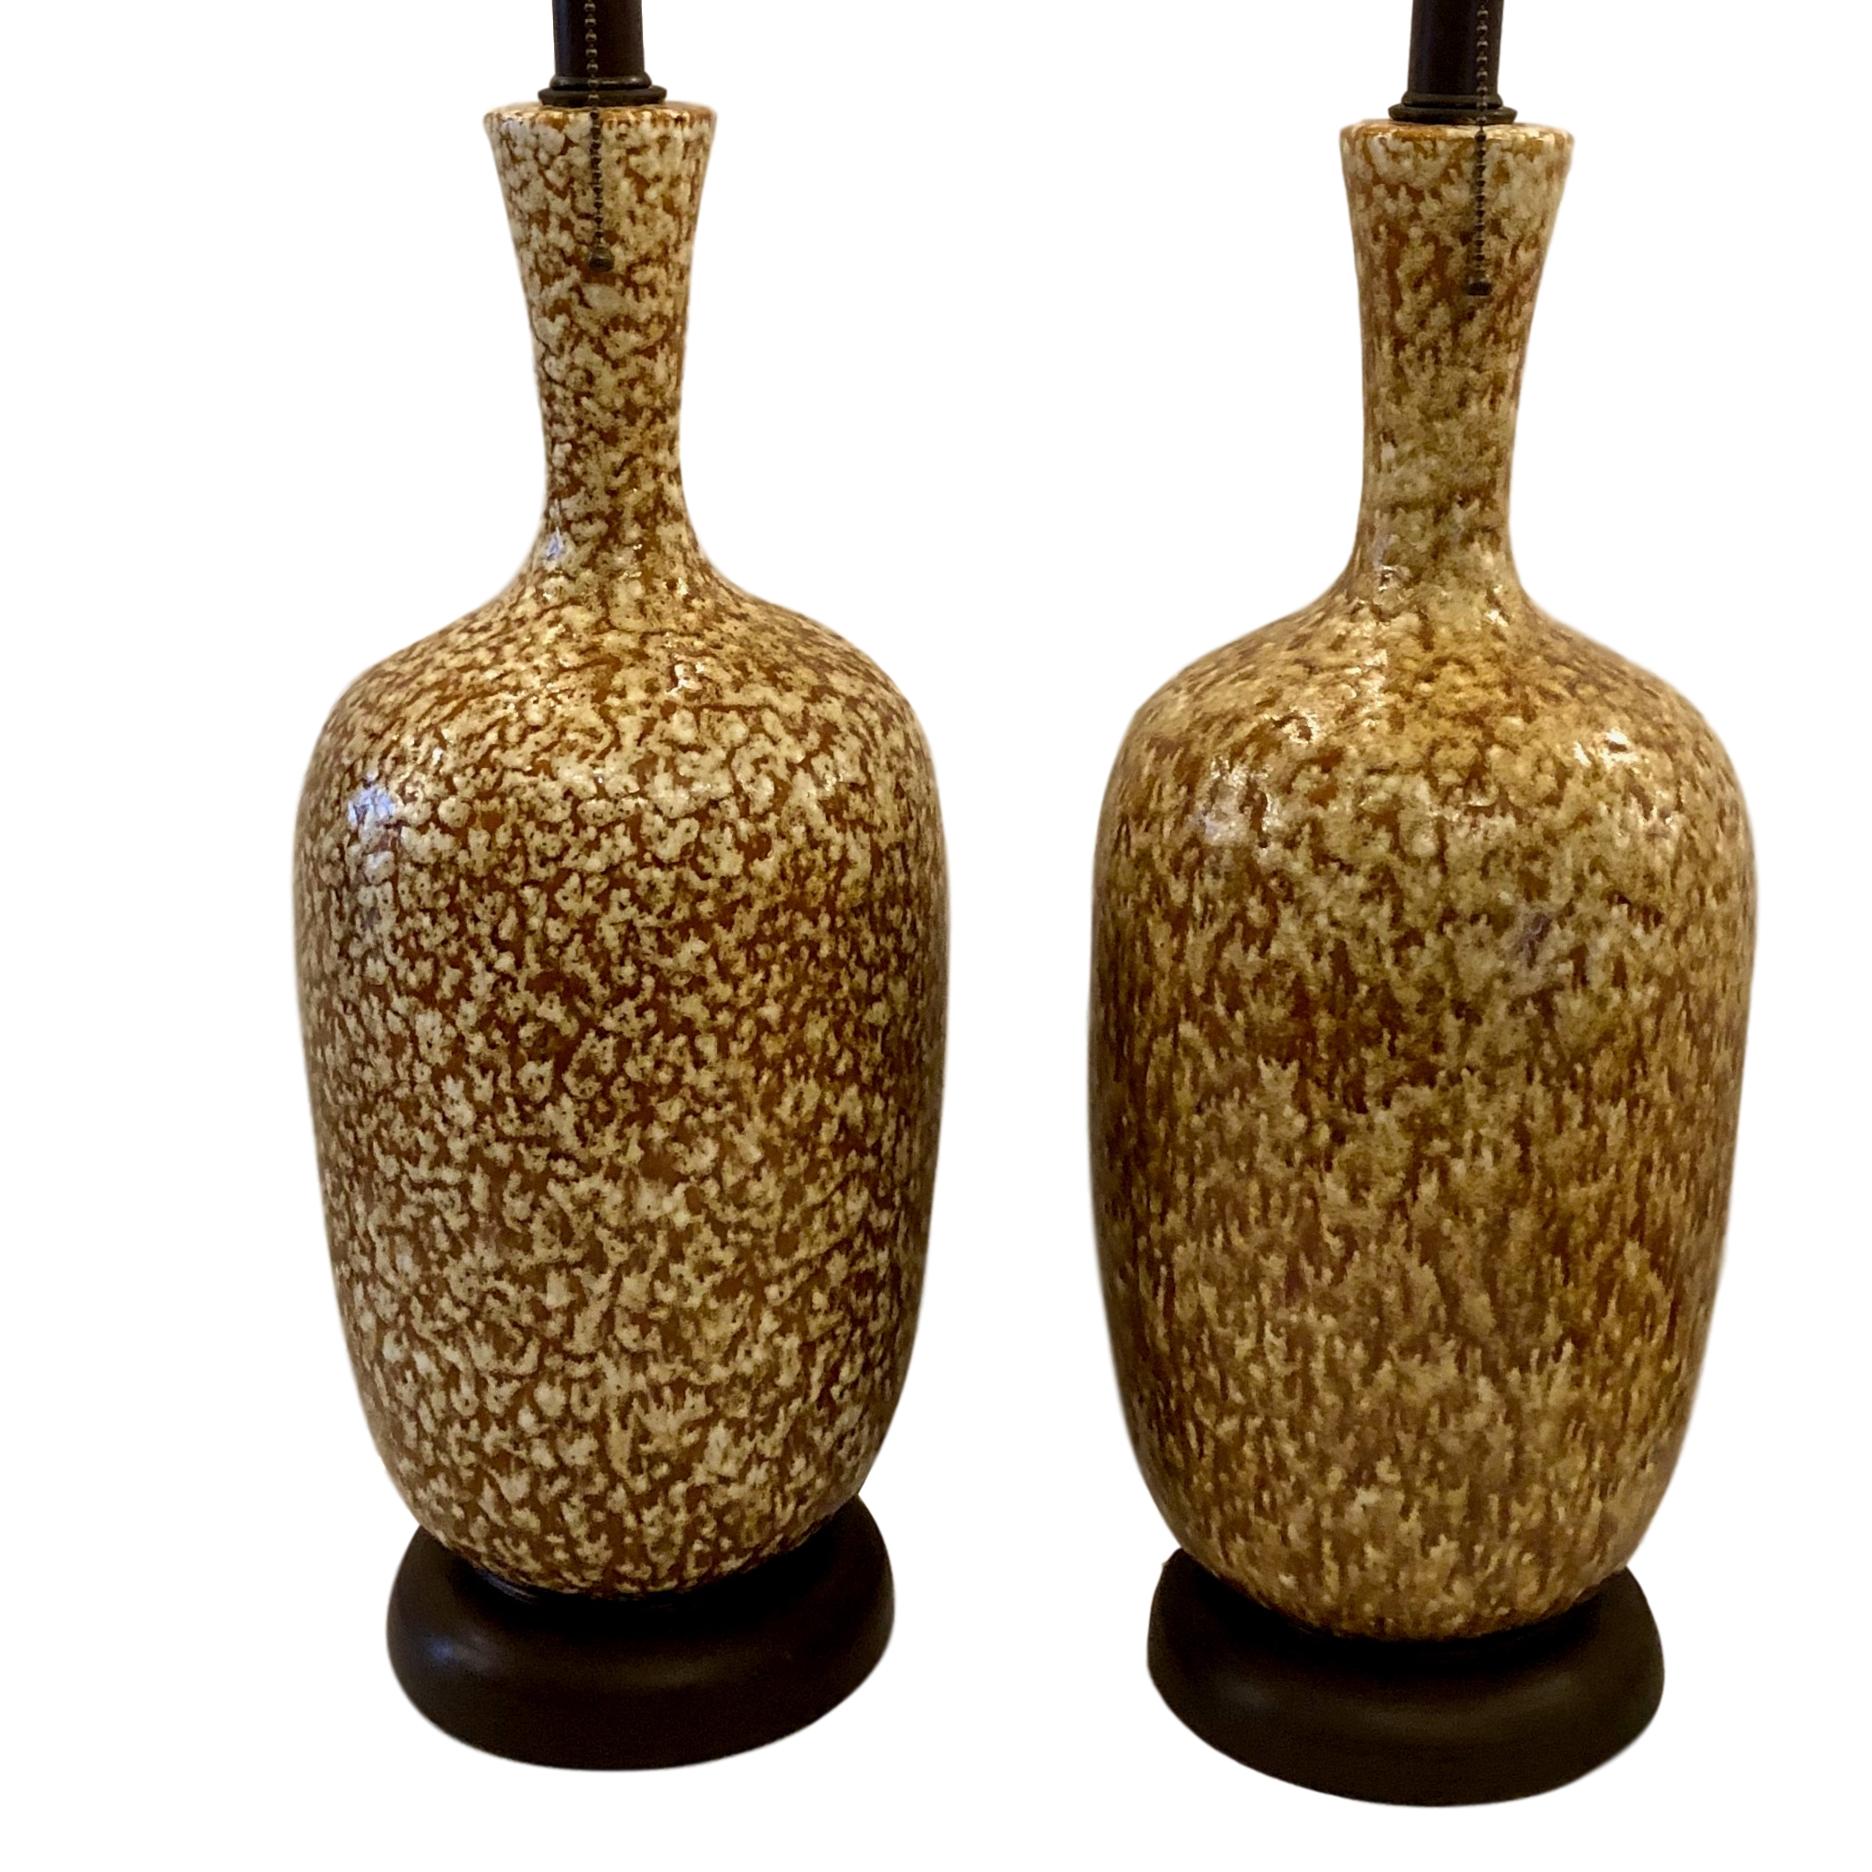 Zwei italienische Tischlampen aus glasierter Keramik mit Holzsockel aus den 1950er Jahren.

Abmessungen:
Höhe des Körpers 18